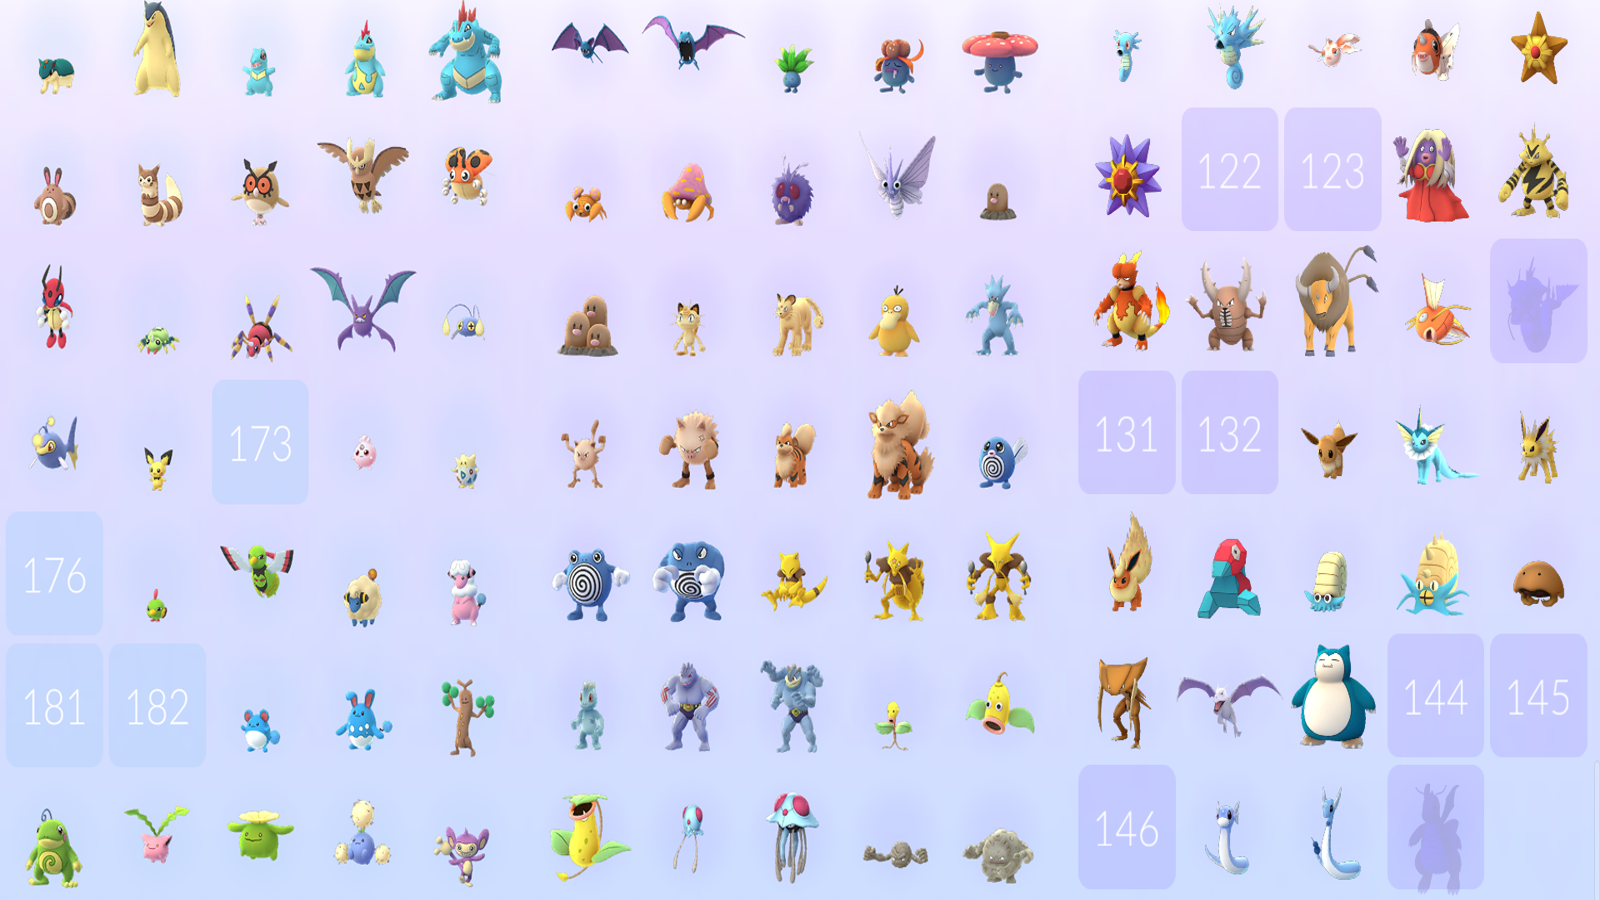 Pokédex Completa em Português: Lista de todos os Pokémon